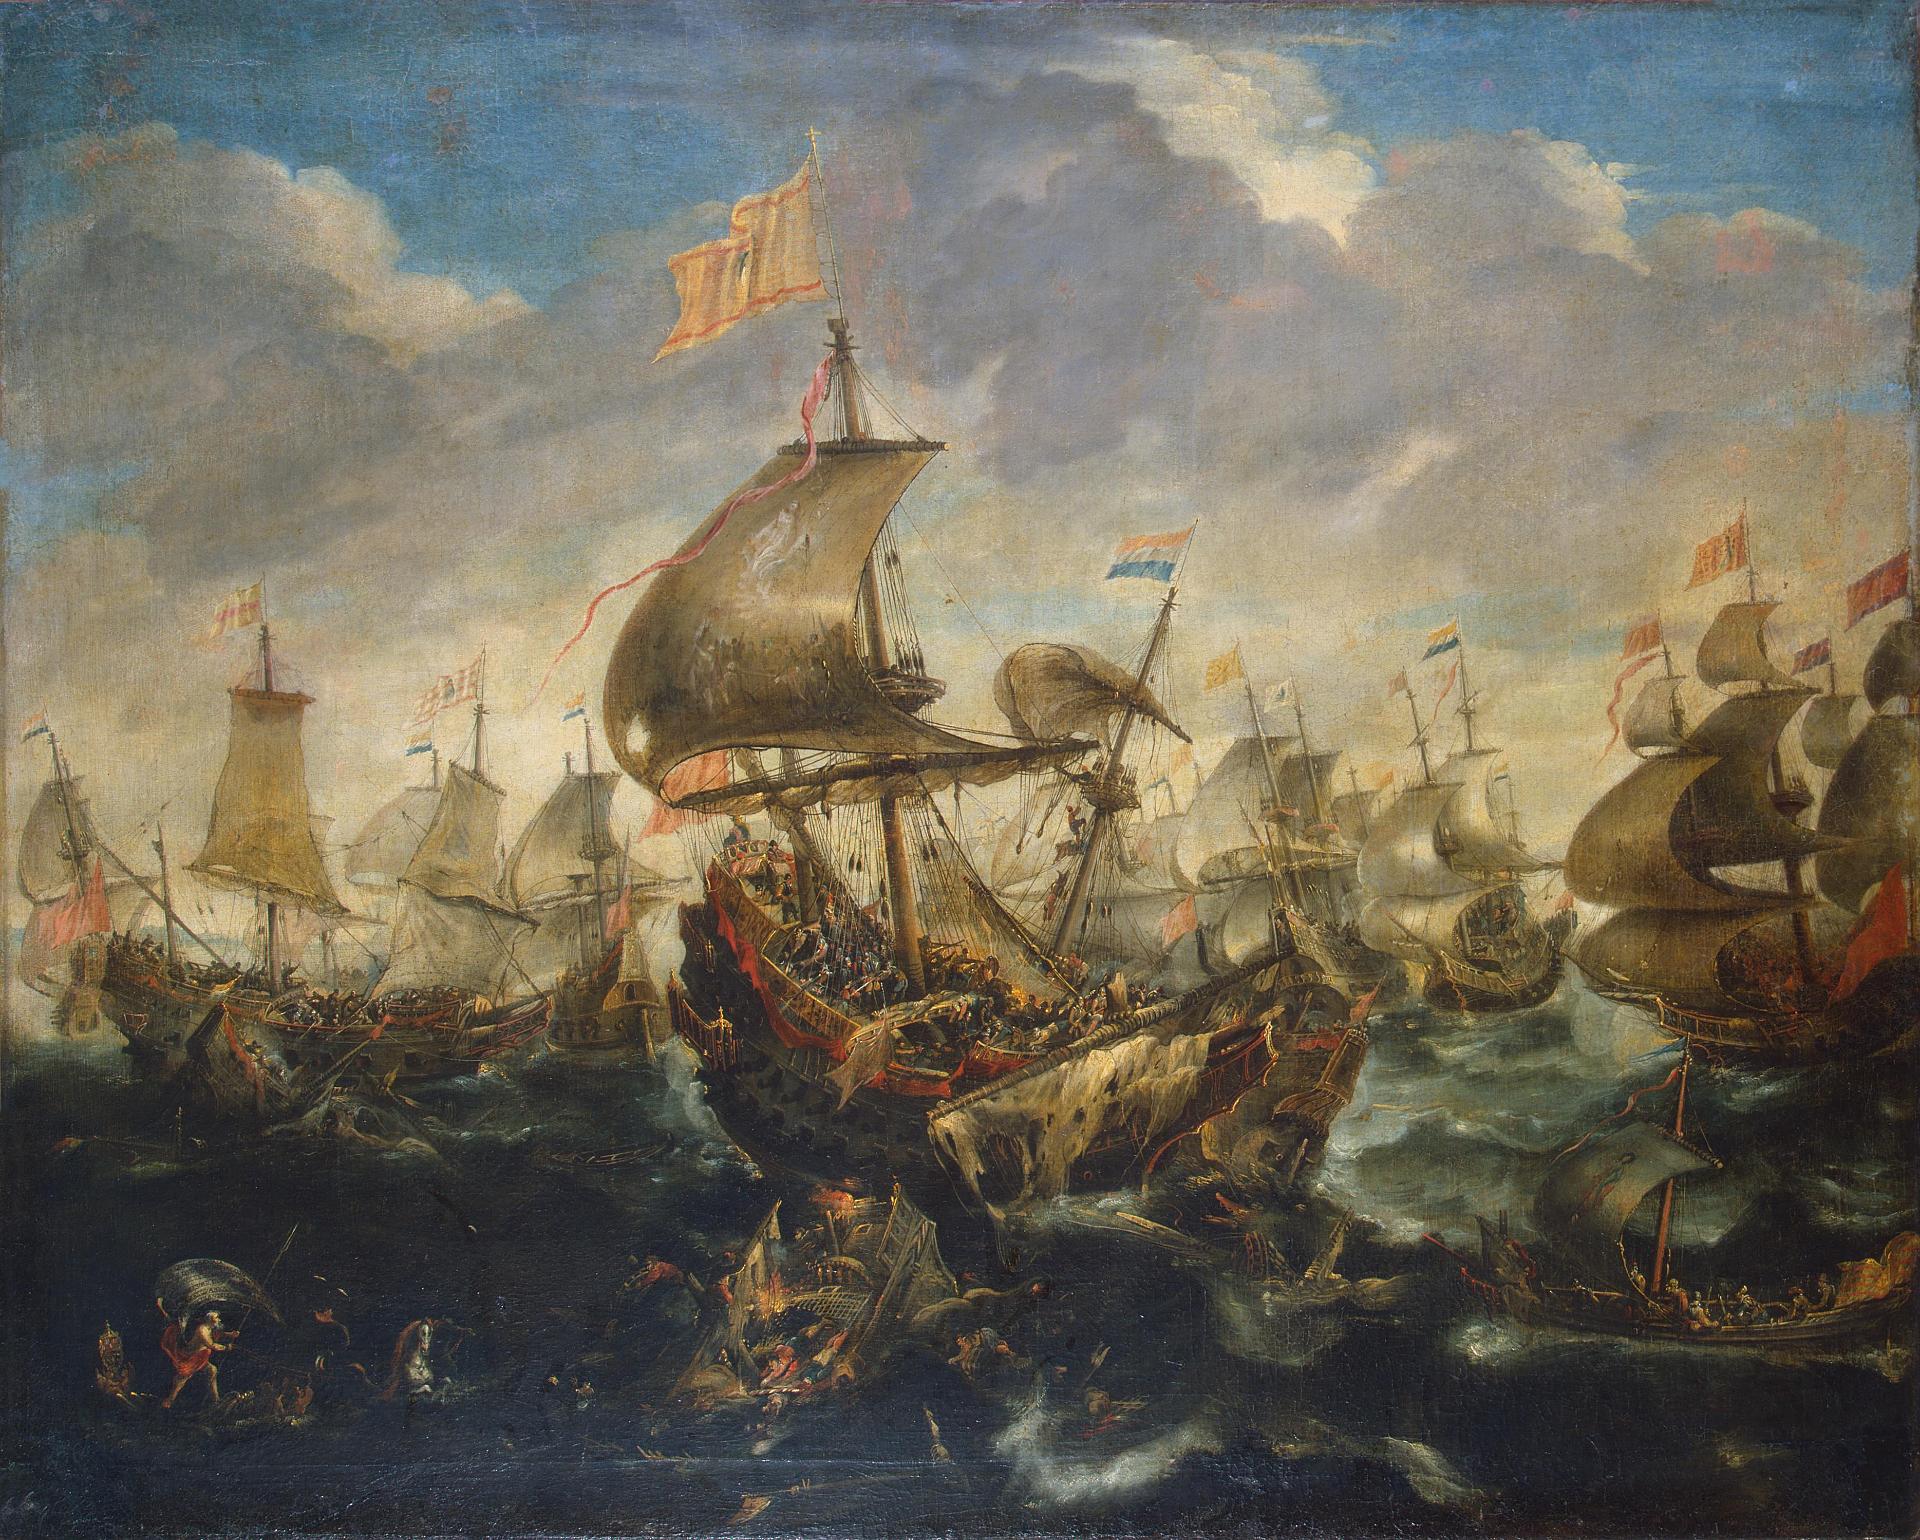 Андрис ван Эртфельт. "Сражение испанского флота с кораблями восставшей Голландии в мае 1573 года во время осады Гаарлема". Середина 1620-х. Эрмитаж, Санкт-Петербург.